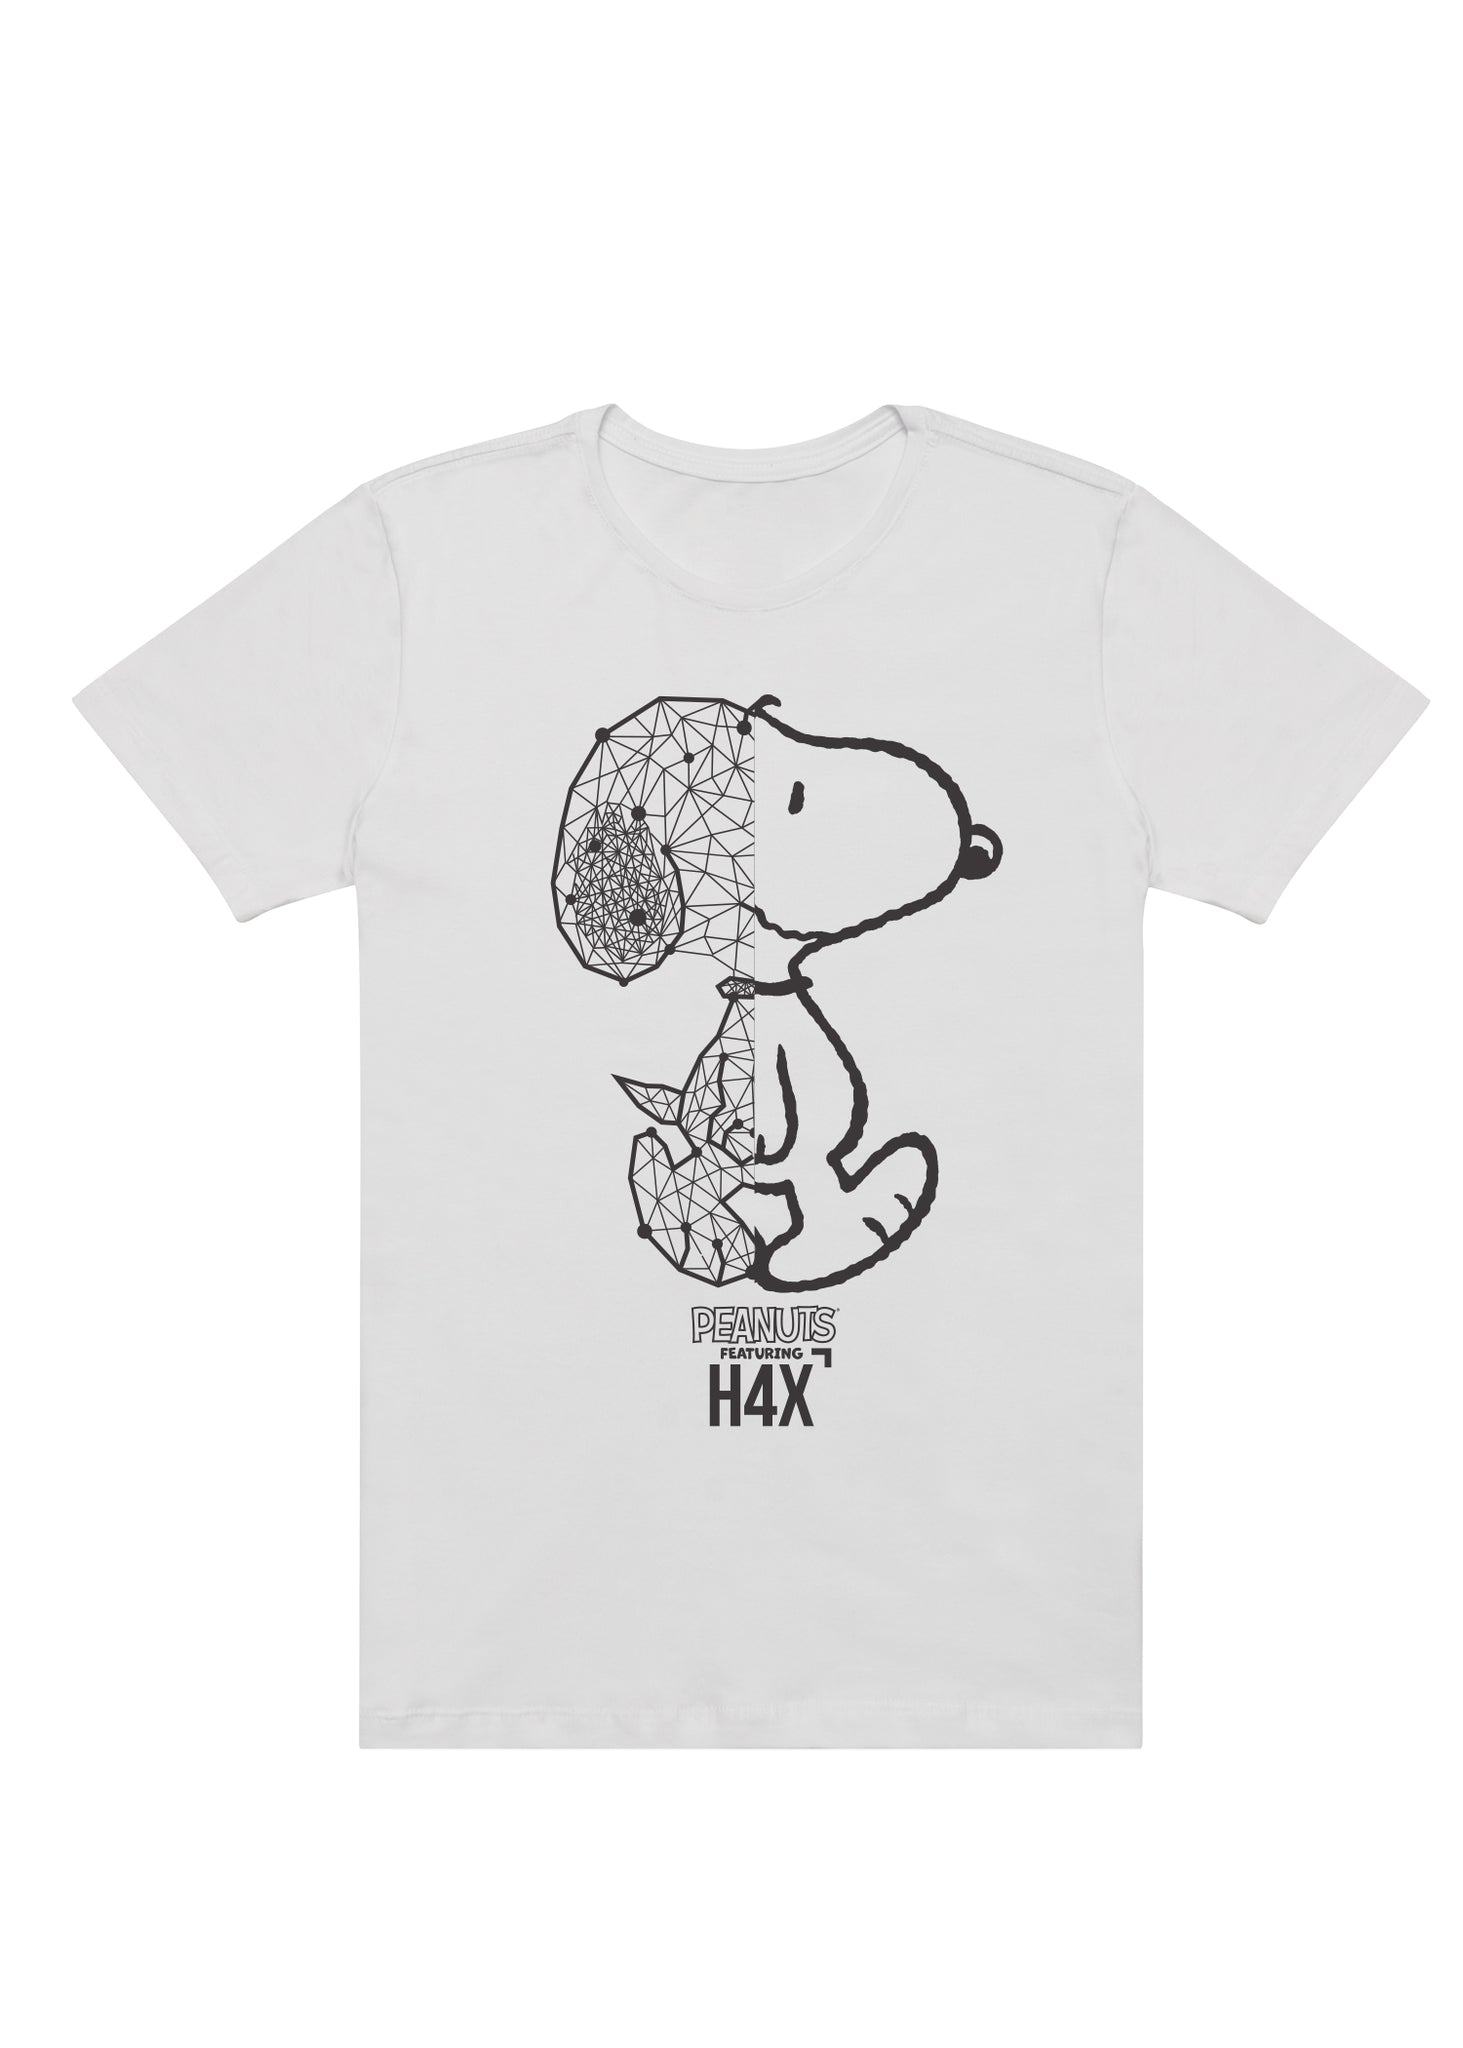 Peanuts – H4X